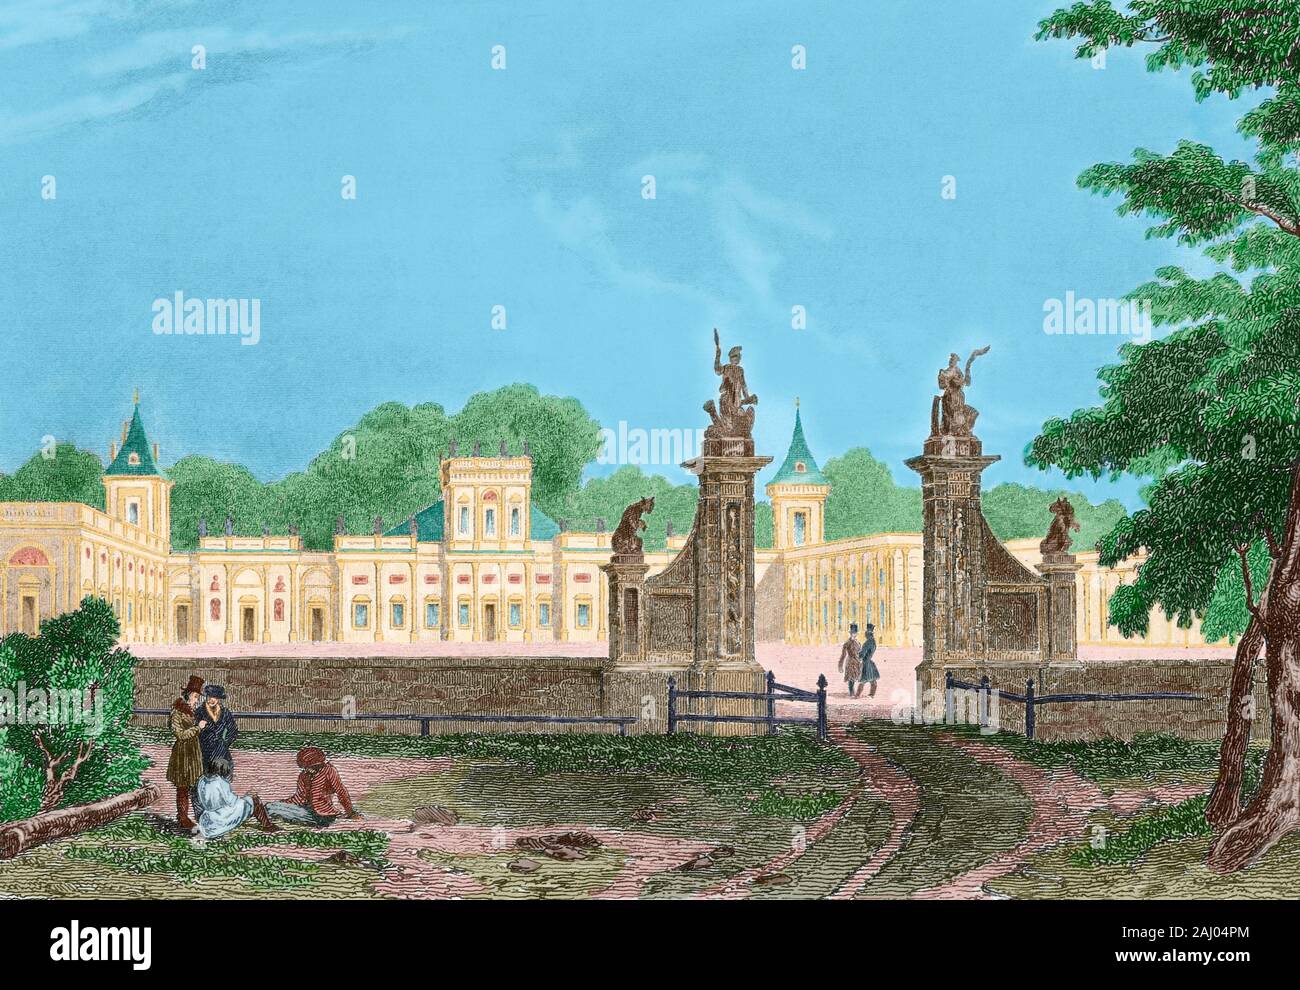 La Polonia. Wilanow Palace, situato nel quartiere Willanow, Varsavia. Il barocco royal residence il borgo che fu di proprietà di re Giovanni III Sobieski (1624-1696). Disegno di J. Arnout. Incisione di Lalaisse, 1840. Colorazione successiva. Foto Stock